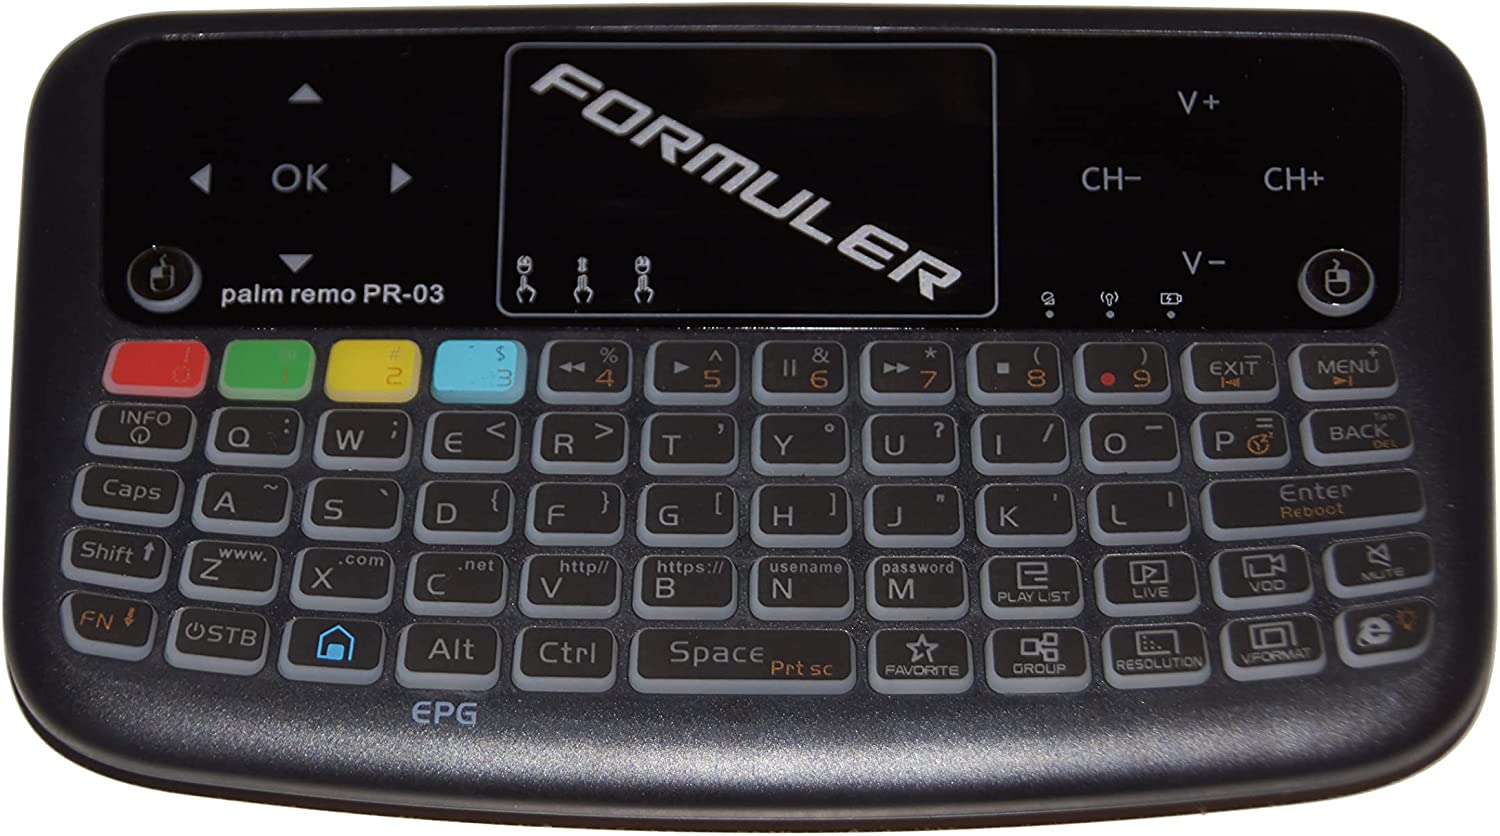 Formuler Z10 + ACESSÓRIOS GRATUITOS: 1 x mini teclado sem fio com touchpad + 1 x cabo USB retrátil + 1 x tampa remota azul